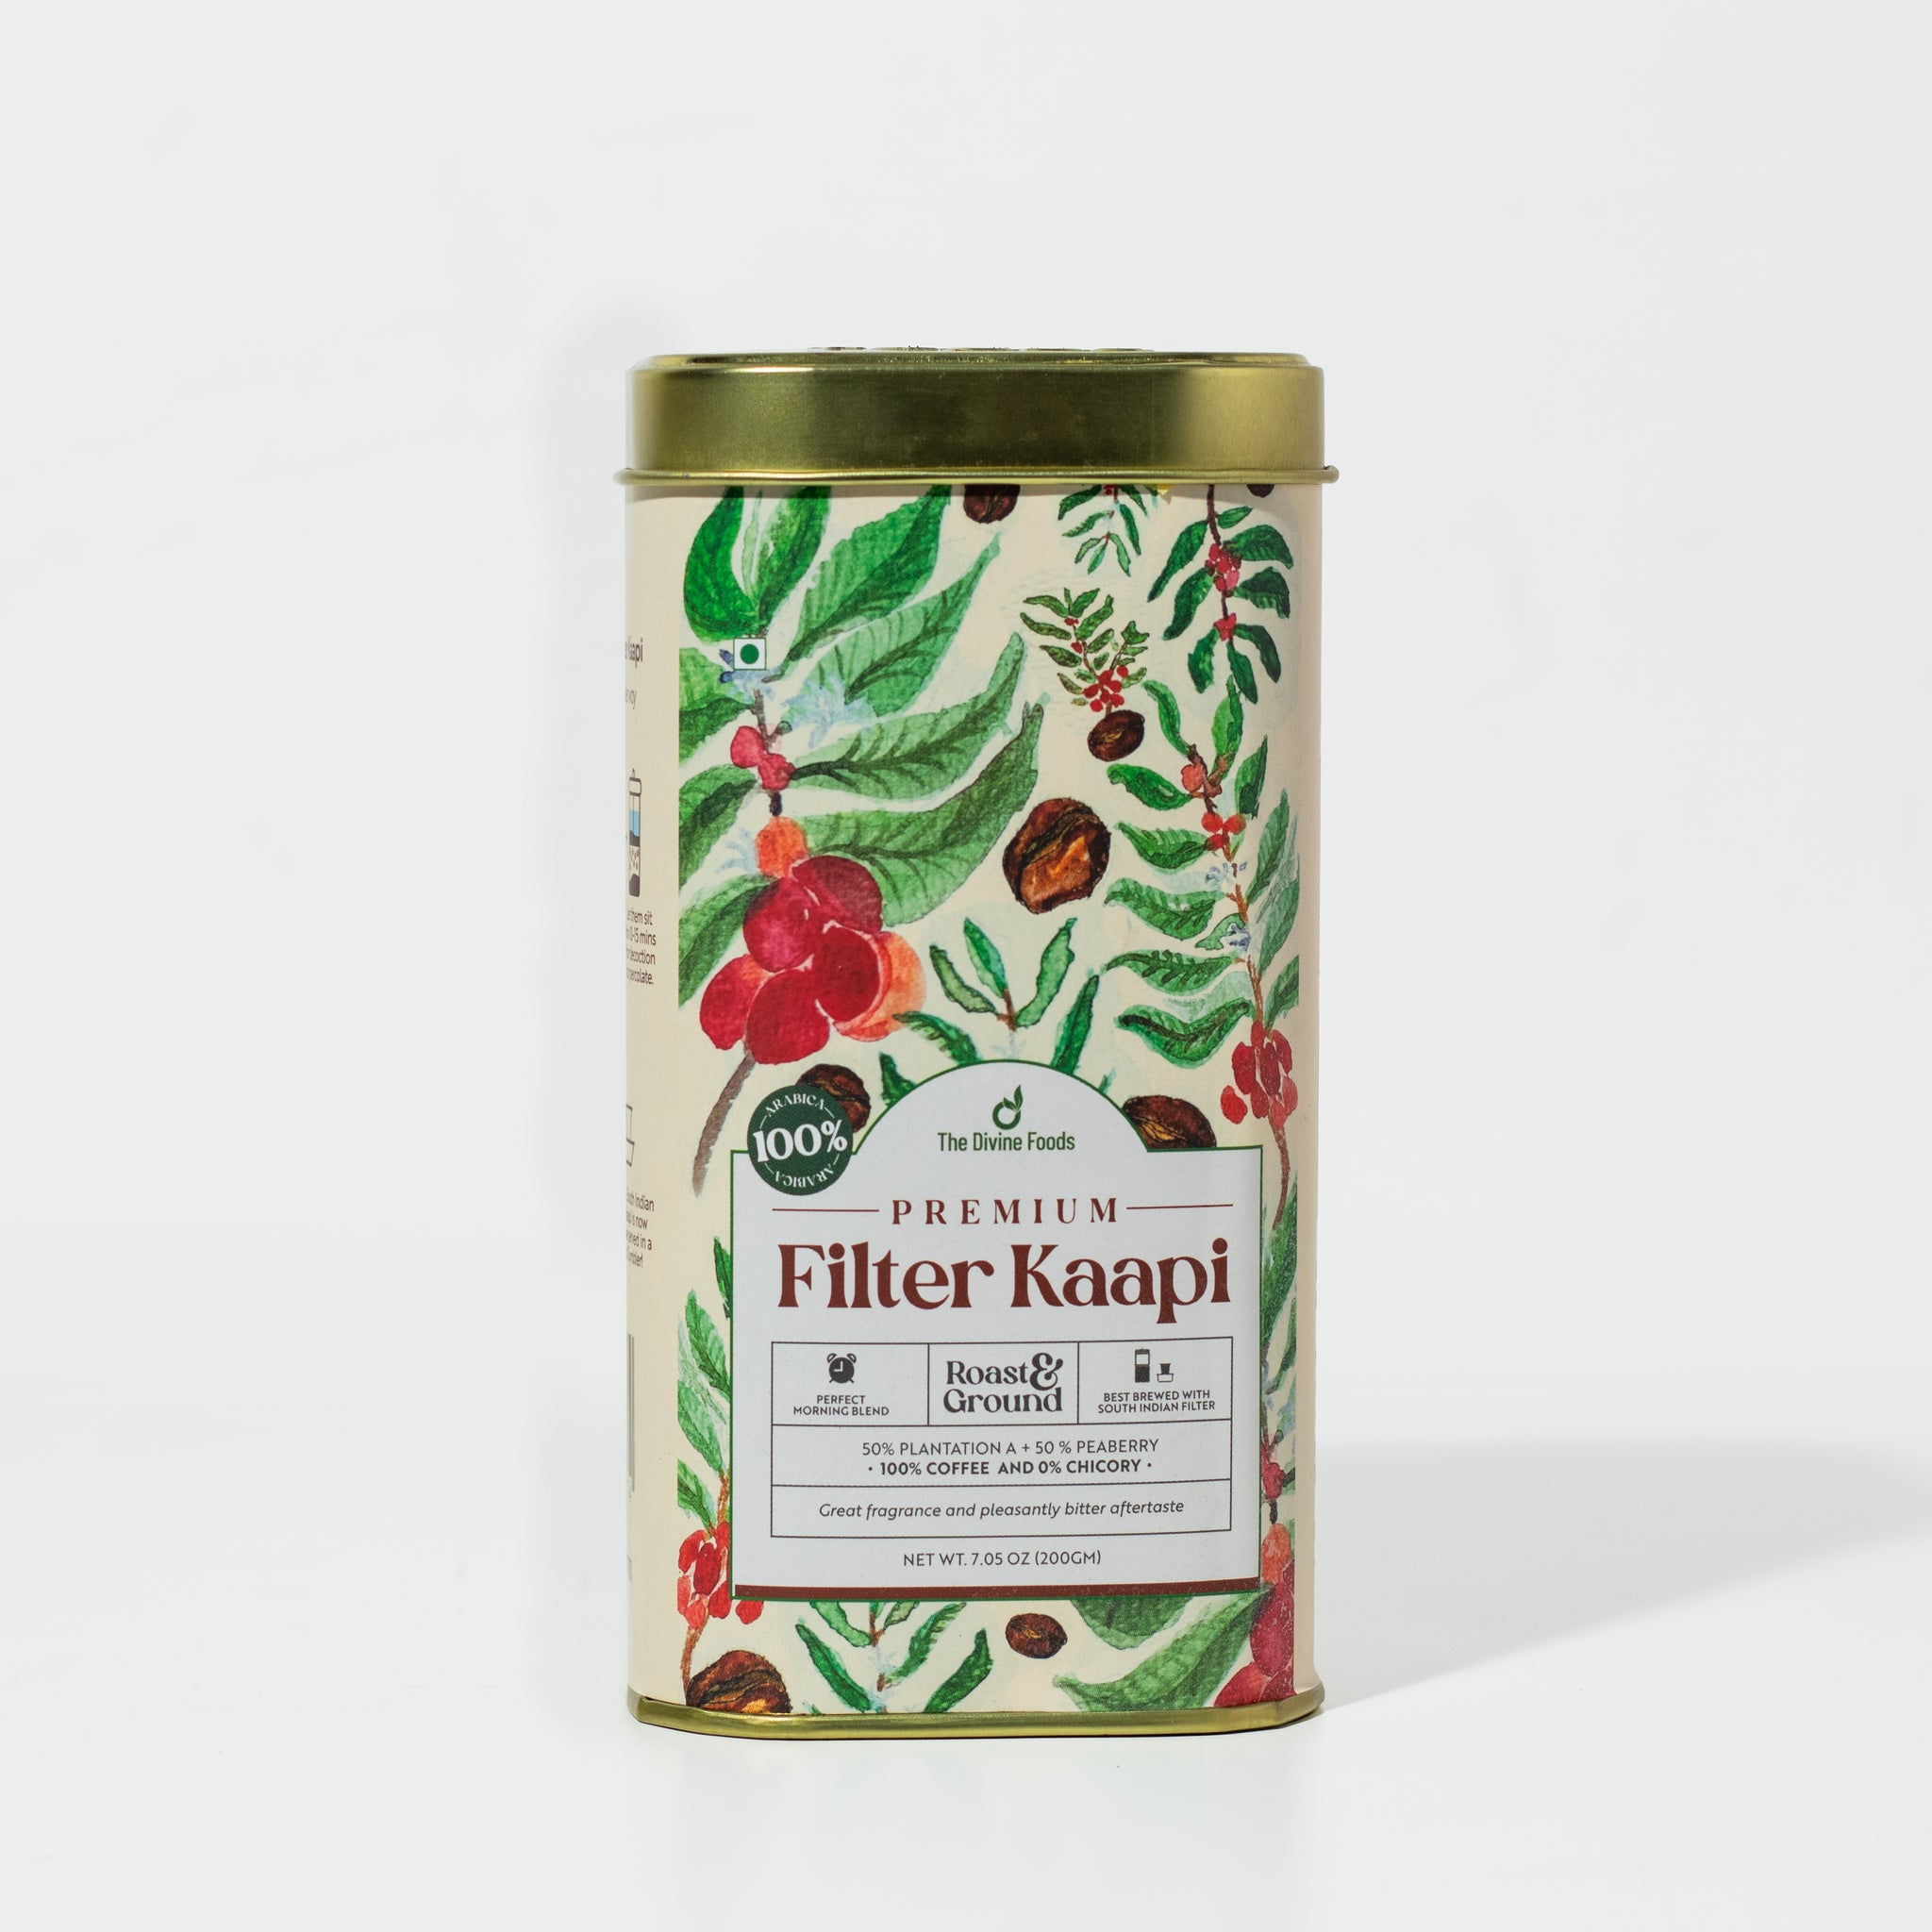 Kumbakonam Filter Kappi Powder (Guilt-Free 0% Chicory) 50% Plantation A 50% Peaberry